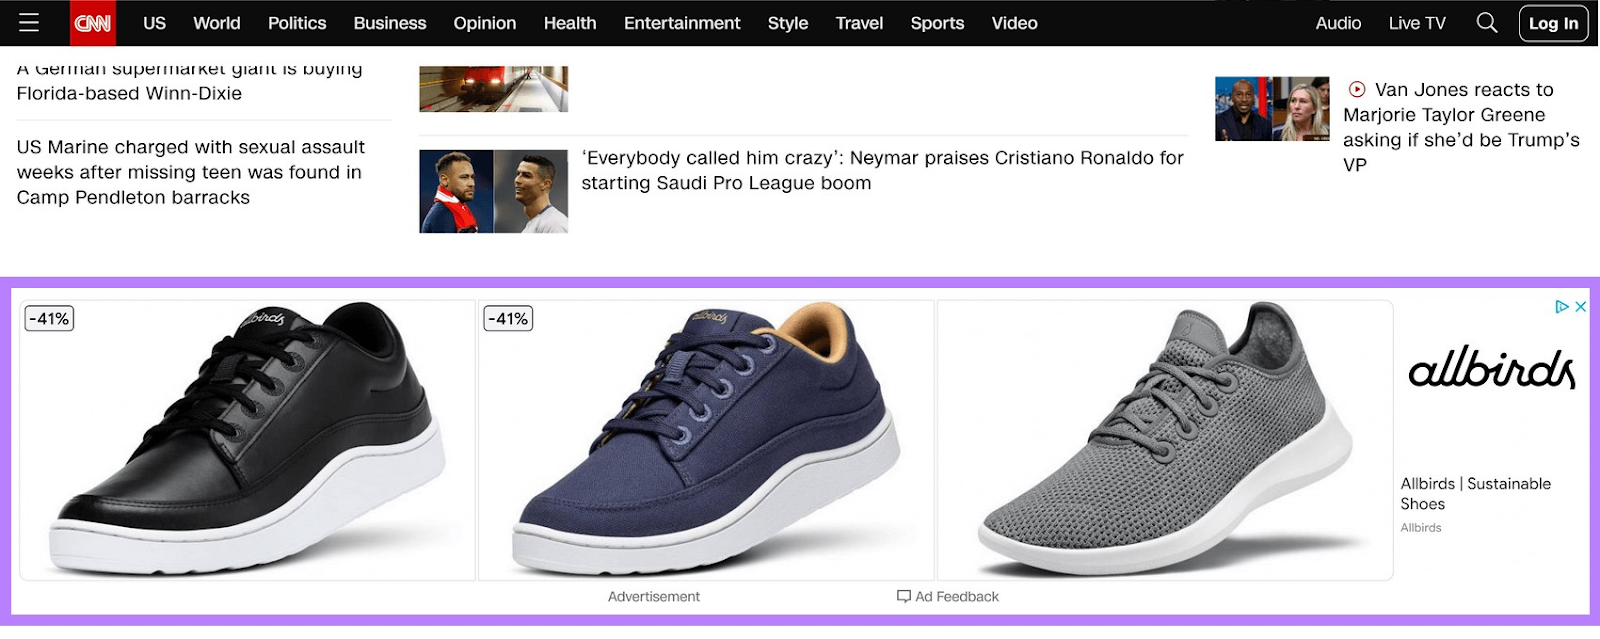 un exemple d'annonce display pour chaussures sur la page CNN